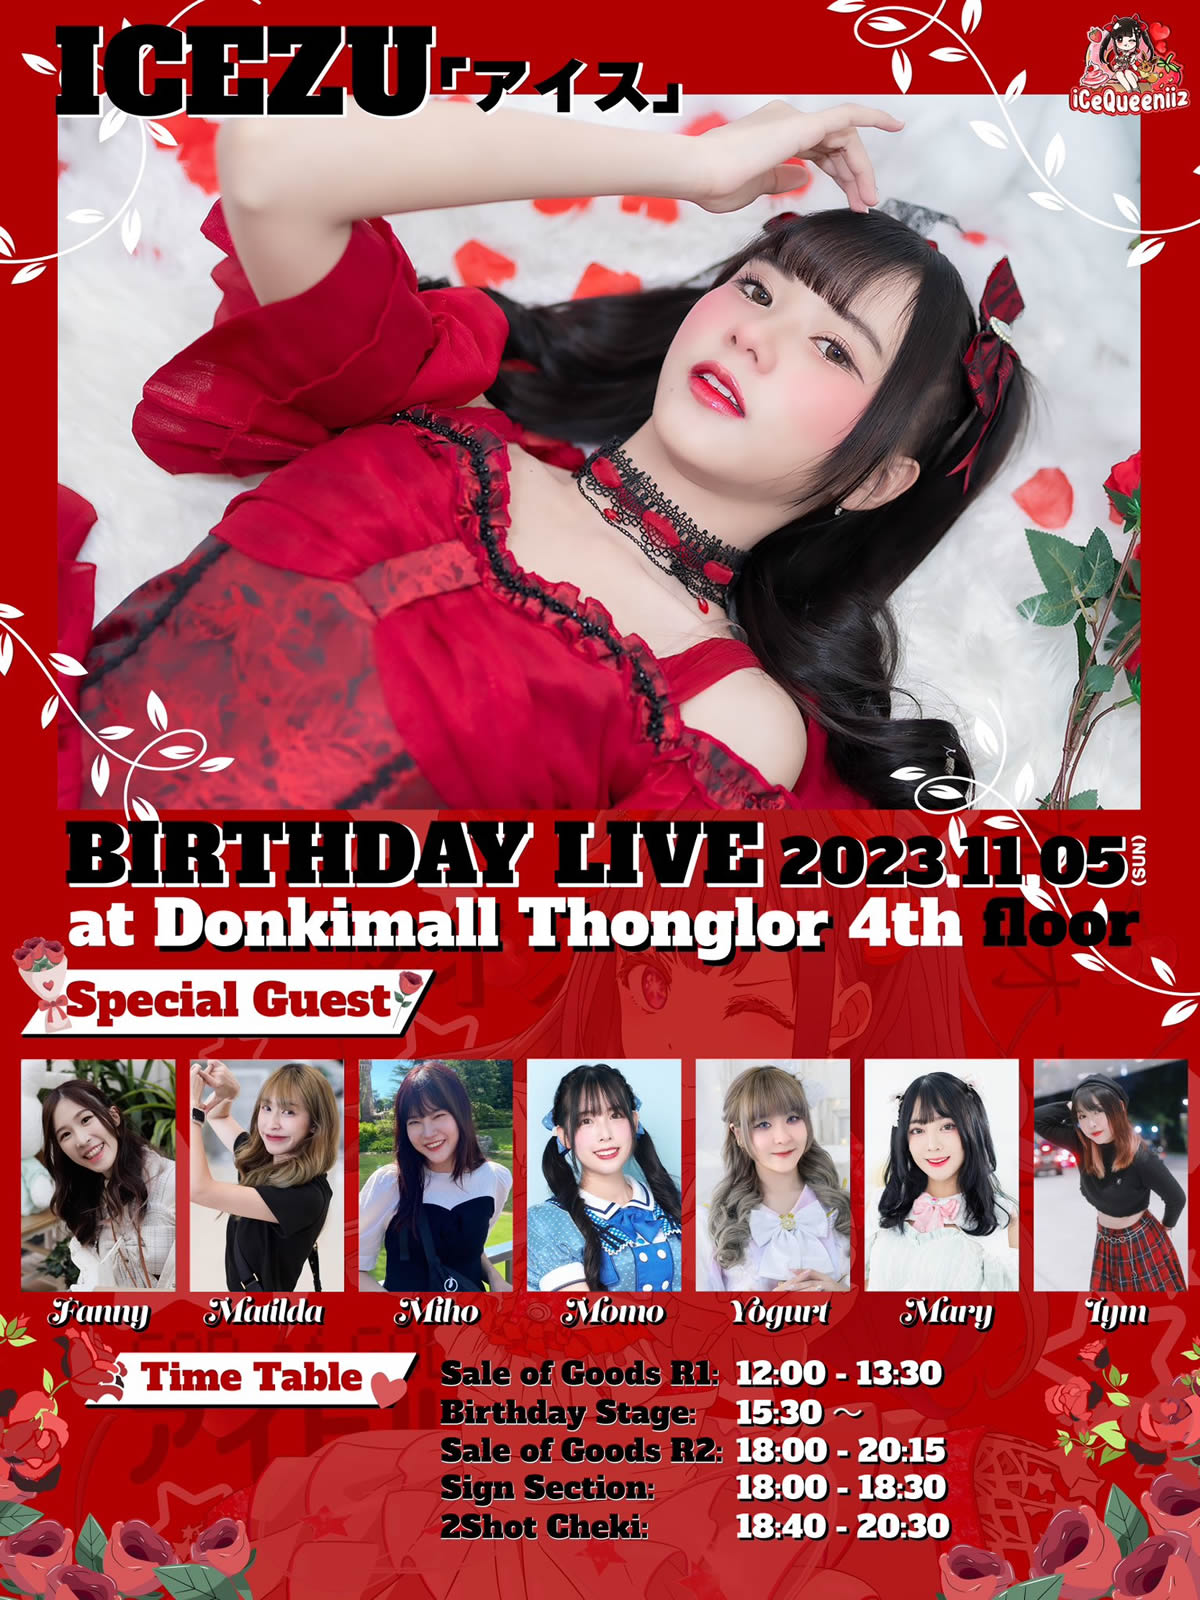 タイのスーパーアイドル「アイス」が生誕ライブ、ドンキモール・トンローで11月5日(日)開催